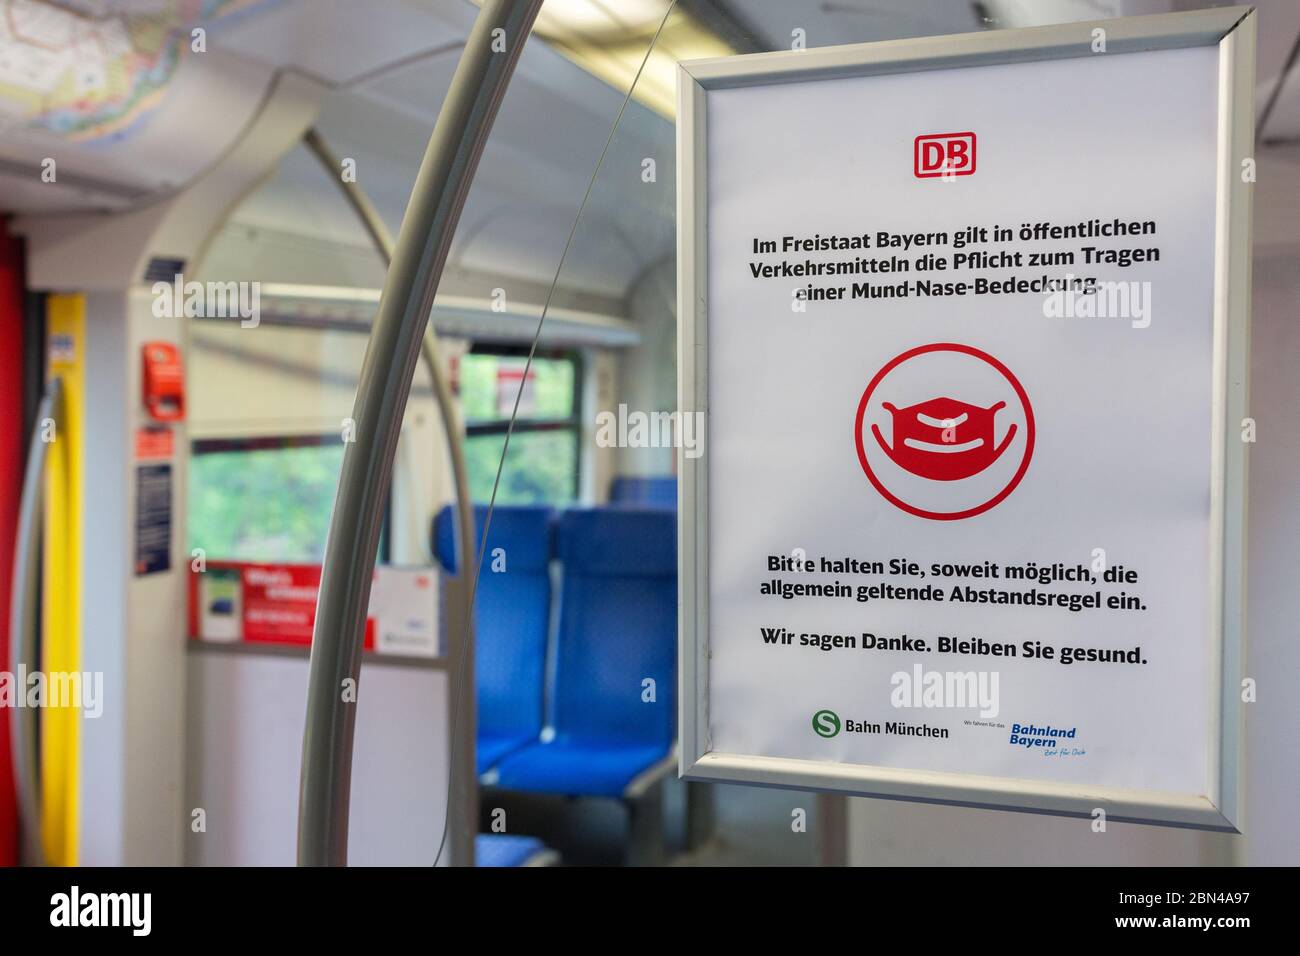 Firma all'interno di un treno pubblico (S-Bahn) che chiede ai passeggeri di indossare una maschera facciale e di mantenere la distanza. Misura nella lotta contro il Coronavirus. Foto Stock